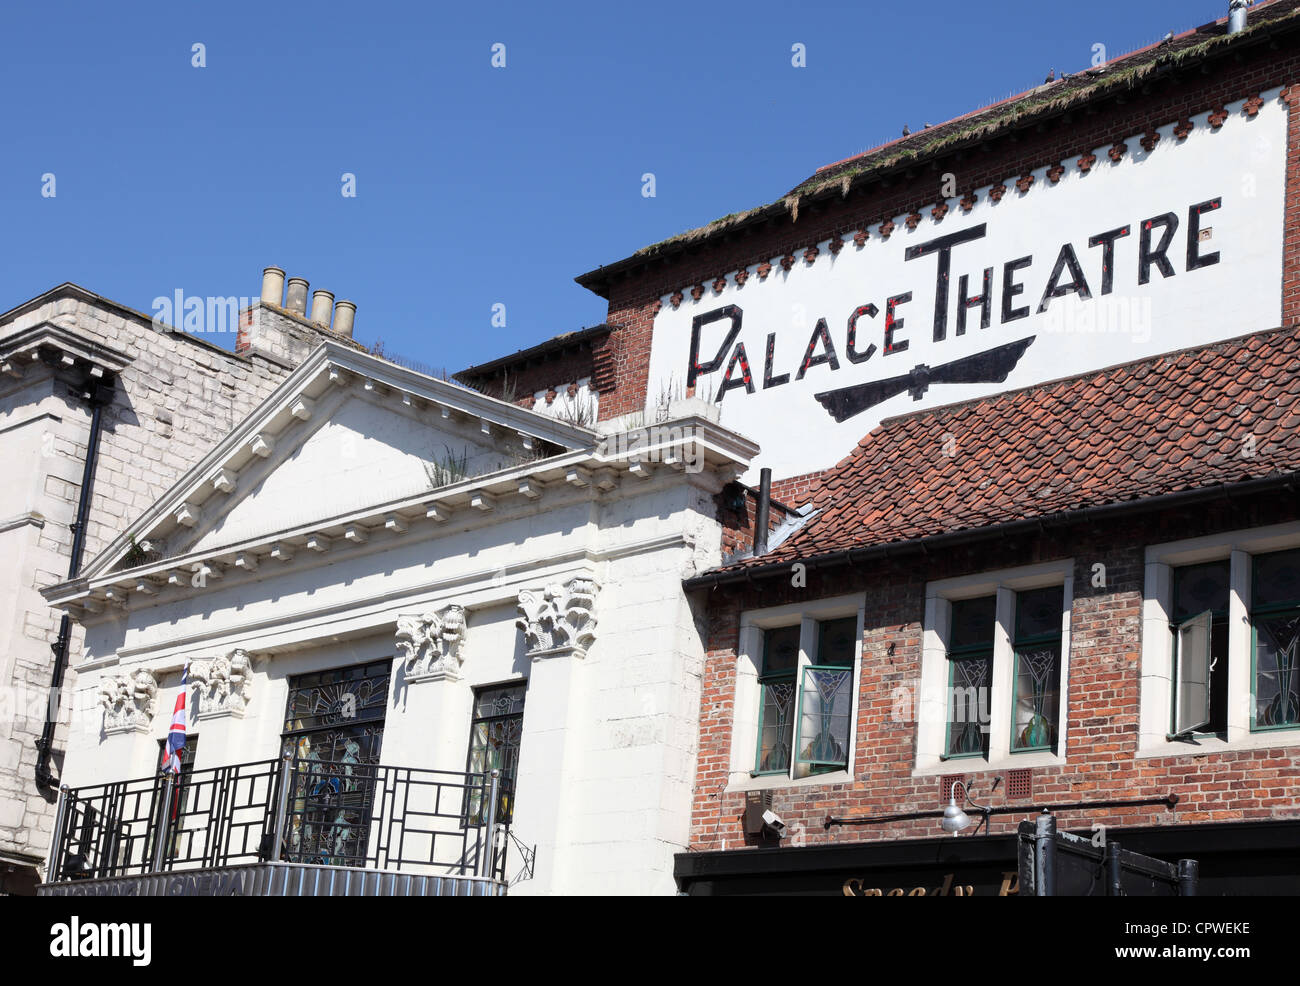 Le Palace Theatre de Malton, Yorkshire, Angleterre, Royaume-Uni Banque D'Images